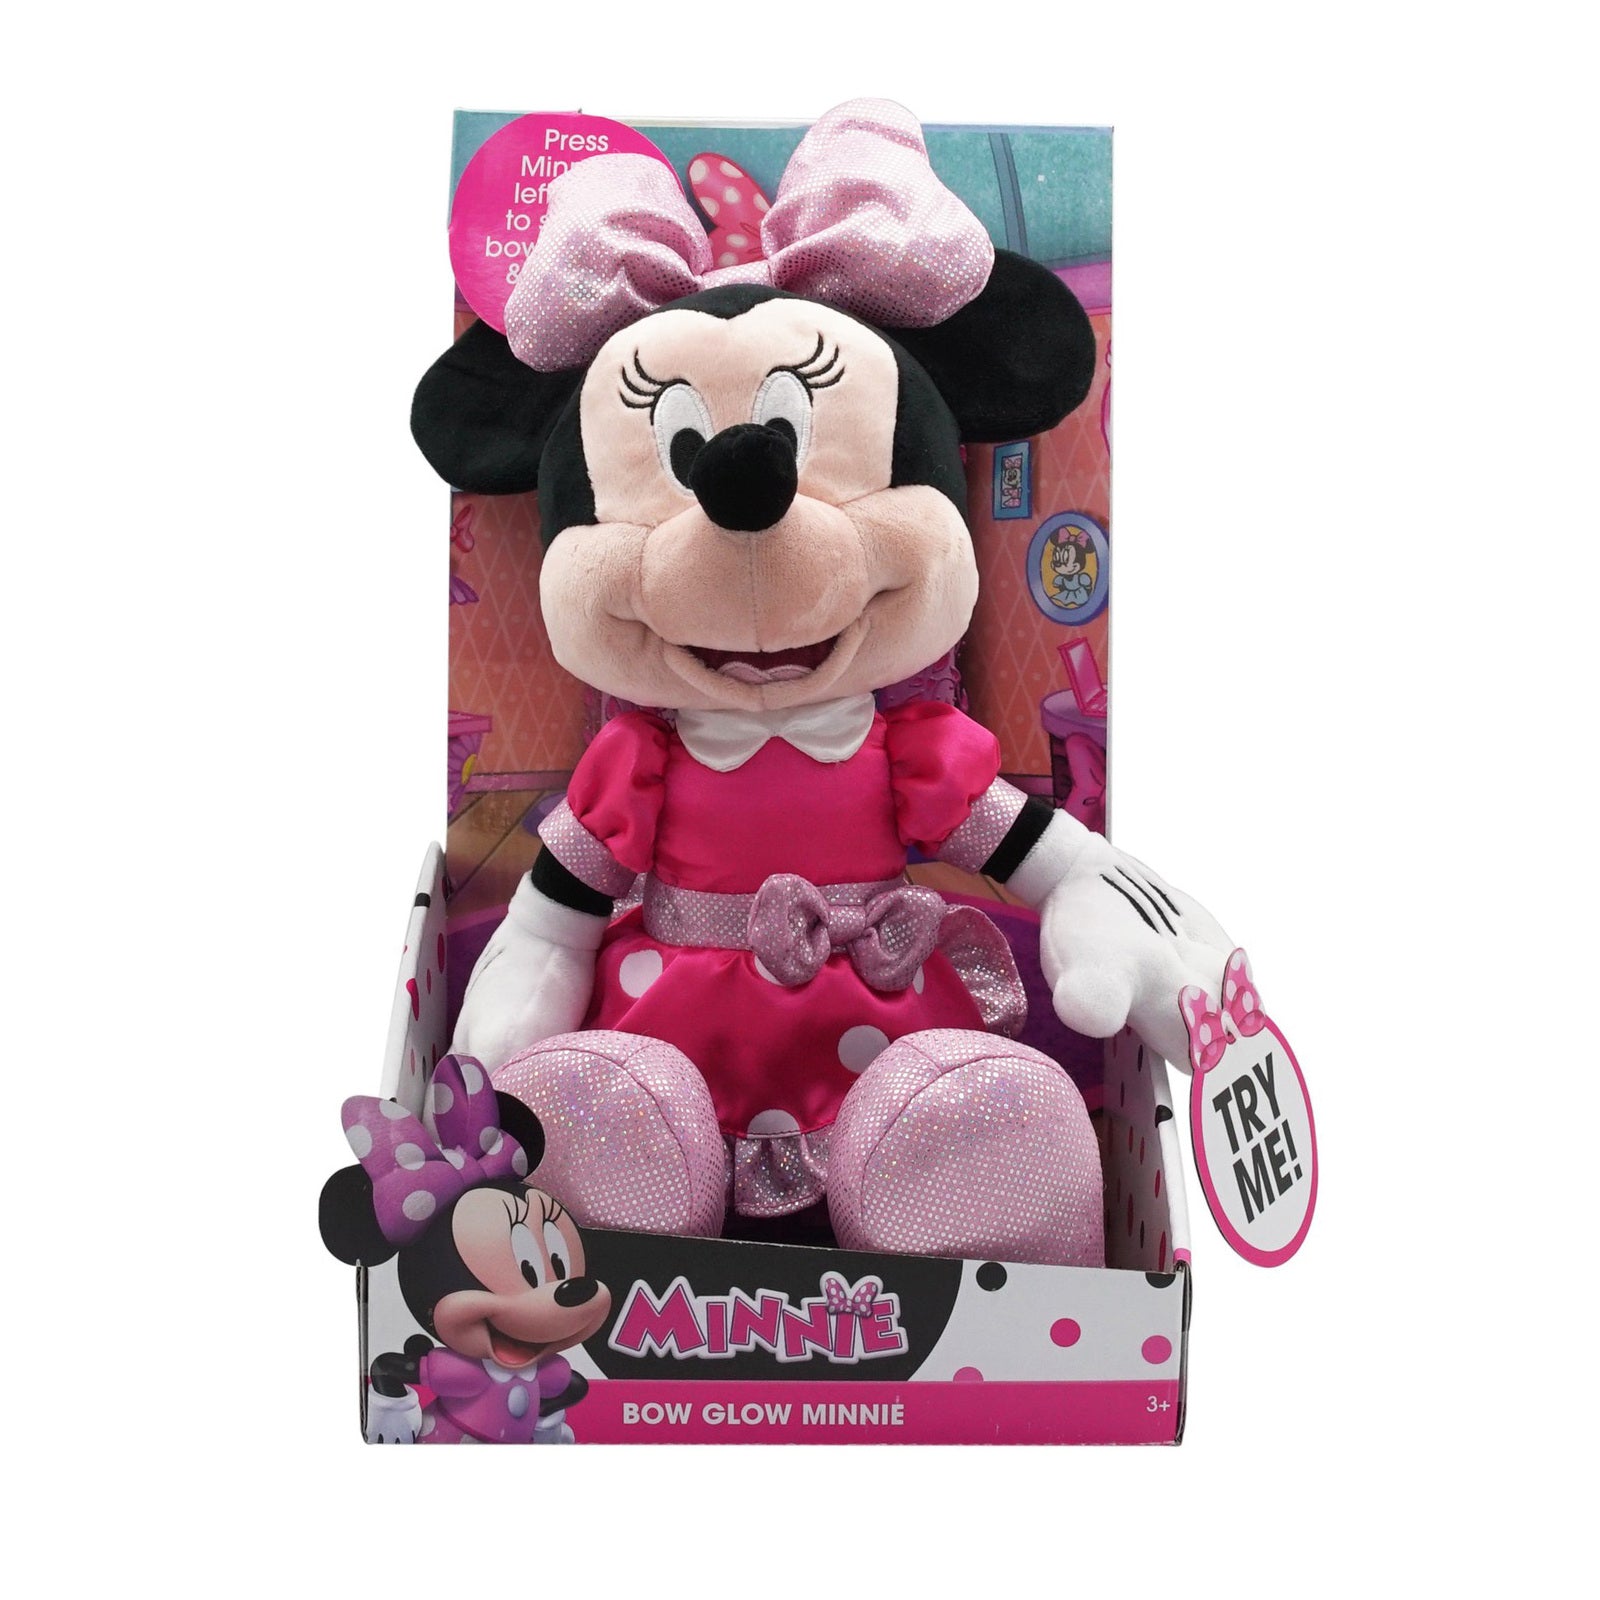 Minnie Mouse Bow Glow Minnie Plush - Pink